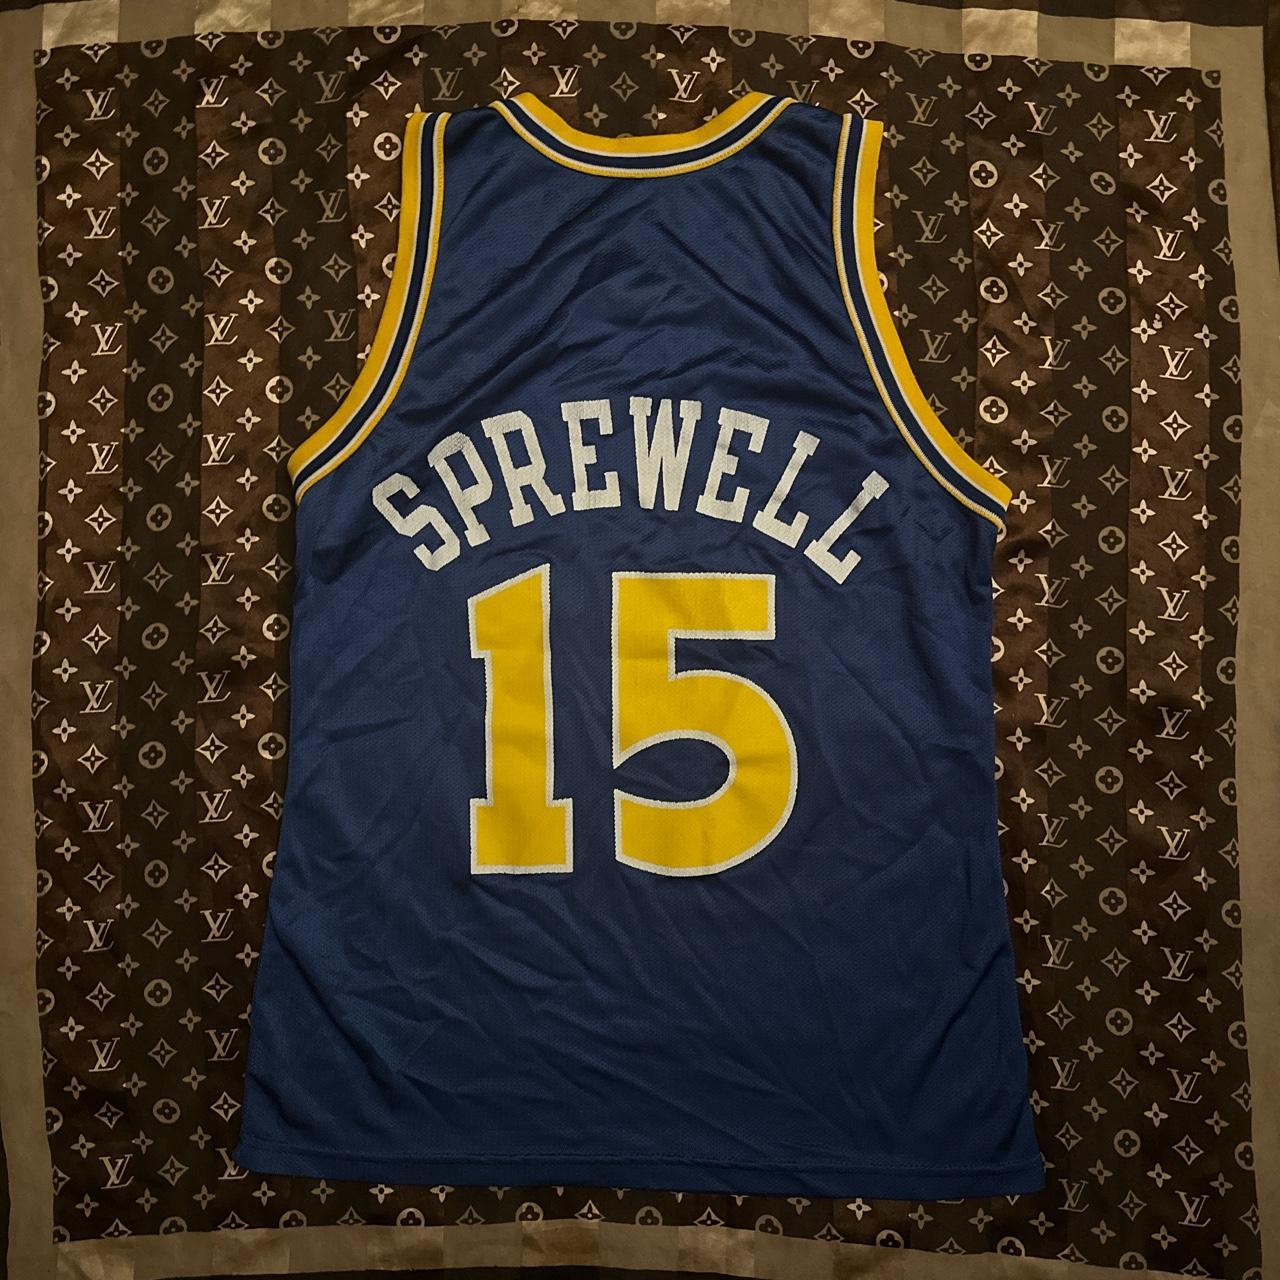 Latrell Sprewell Signed Golden State Warriors Basketball Jersey